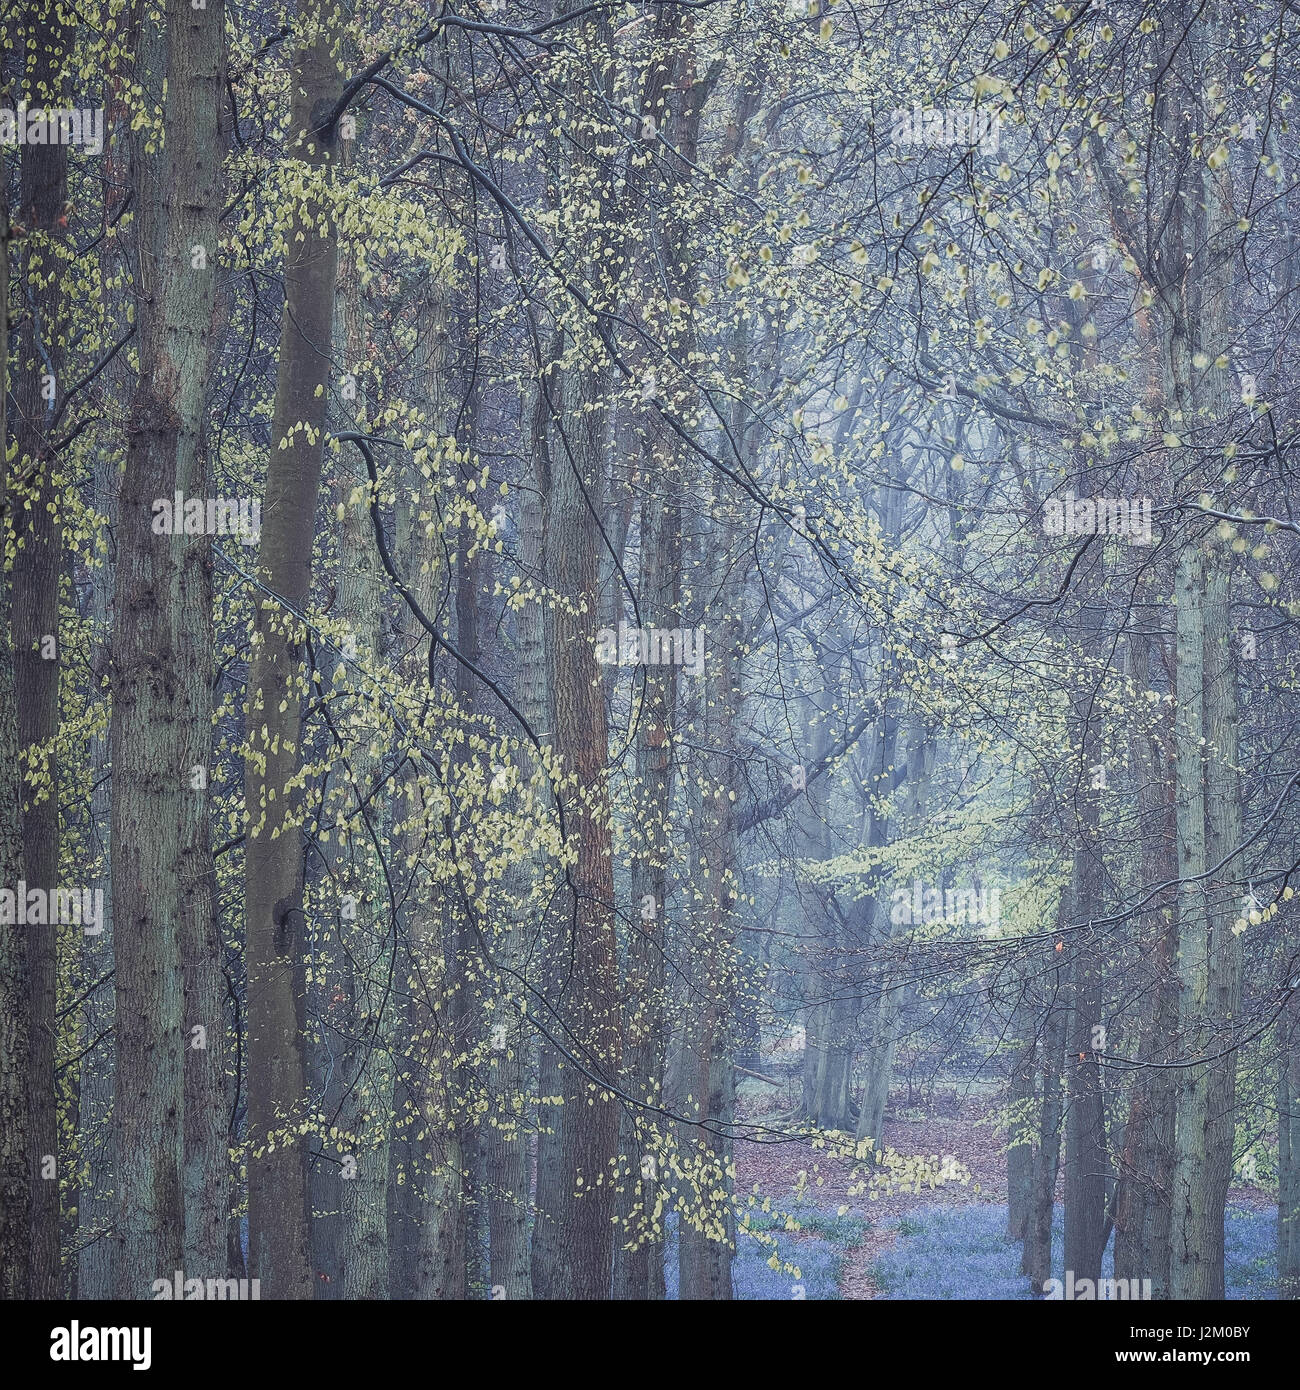 Une image en couleur de Dockey Woods, Hertfordshire prises au printemps 2017 alors que les jacinthes sont en fleurs bien que l'intérêt de cette image est de hêtres. Banque D'Images